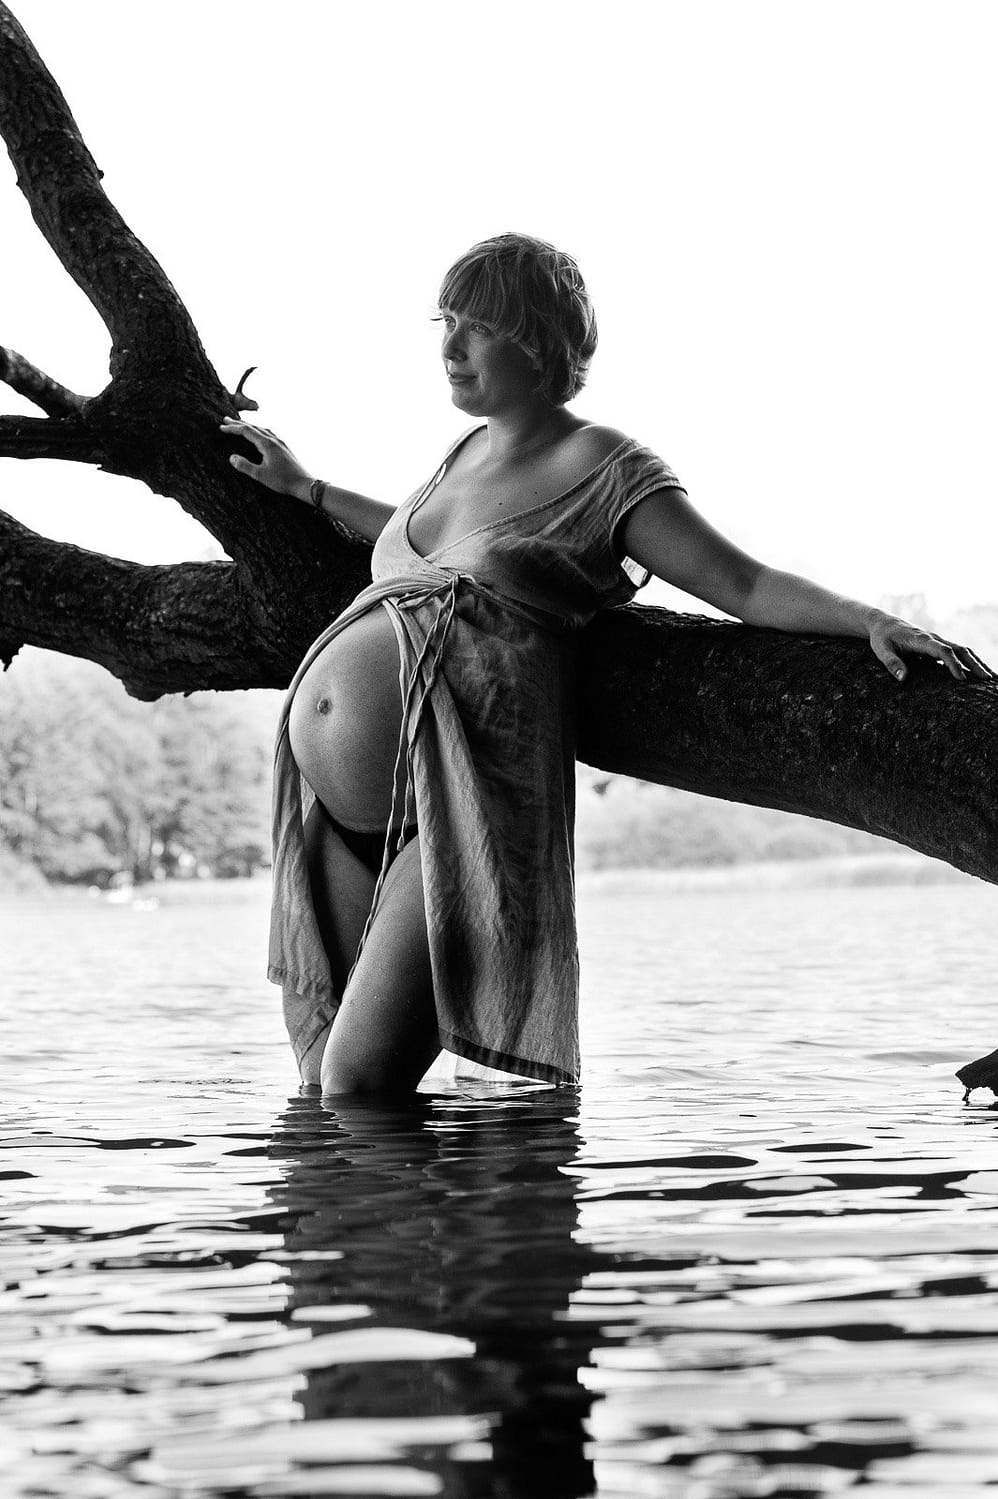 Schwangere steht im Kleid im Wasser am Baum gelehnt beim Babybauch Shooting in Hamburg am See in der Natur